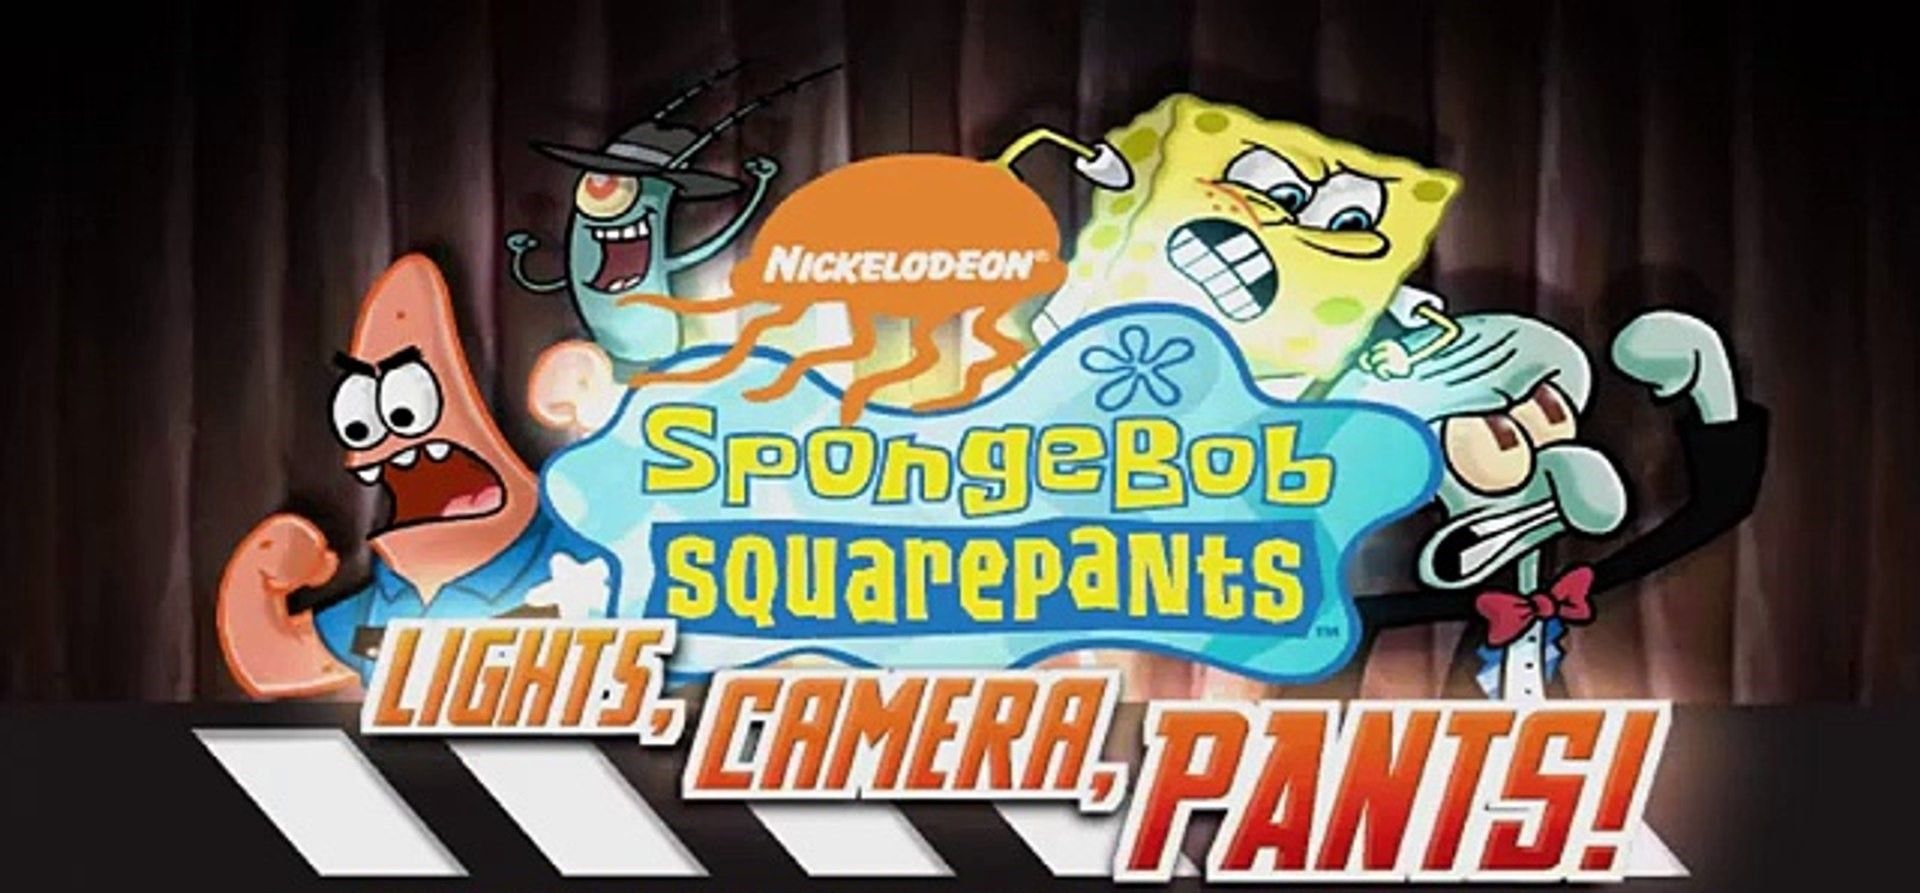 spongebob lights camera pants ps2 concept art